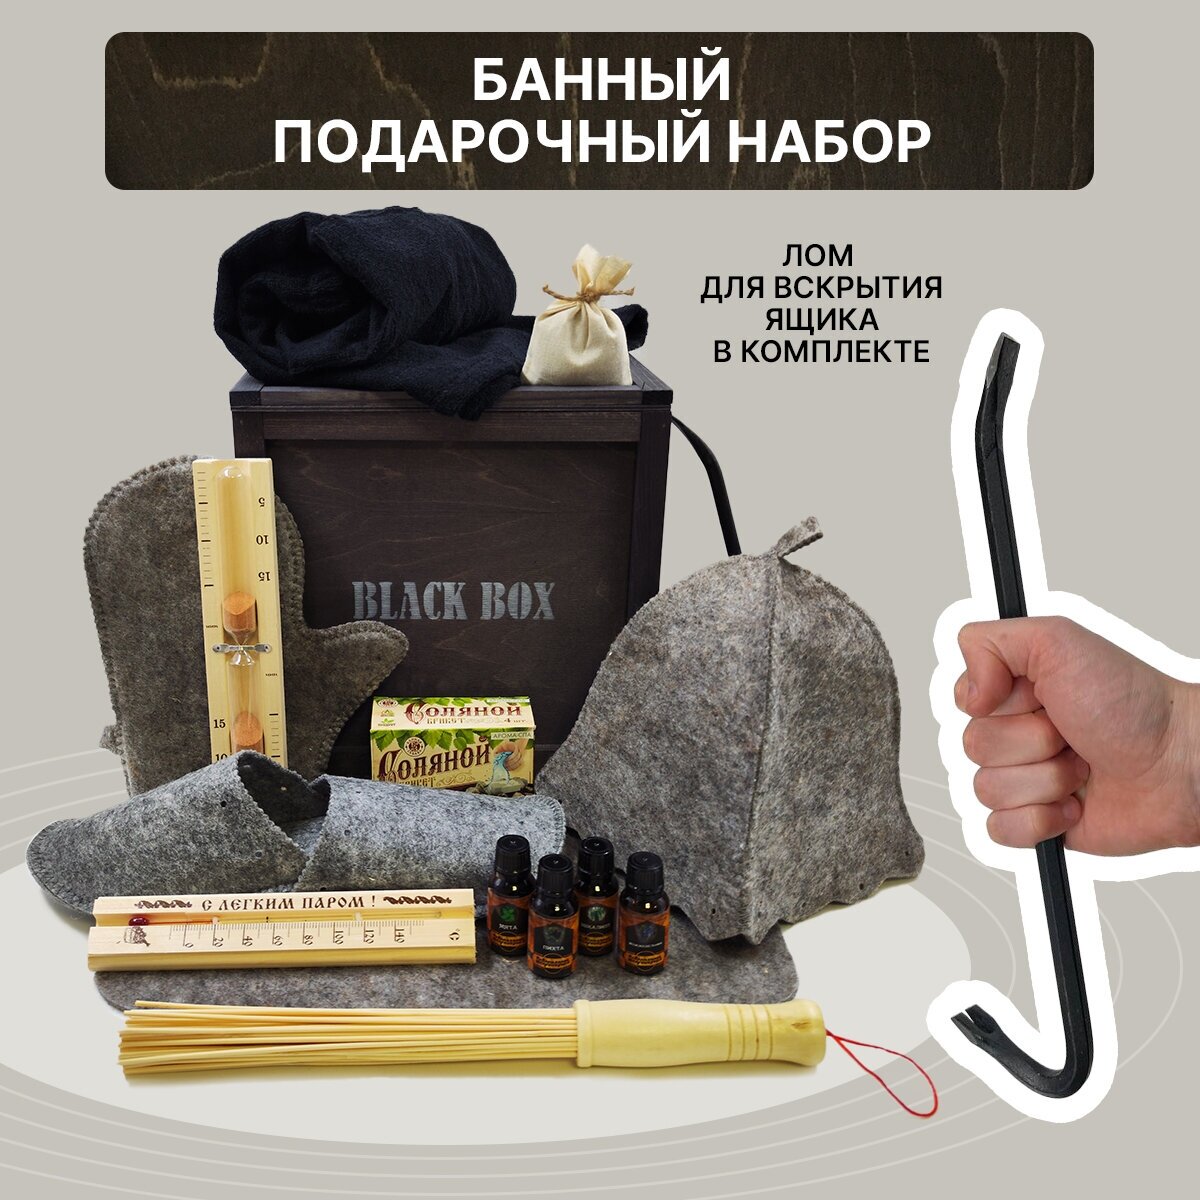 Подарочный набор Black Box "Банный" / Аксессуары принадлежности для бани и сауны килт и банные штучки / Подарок мужчине / Мужской бокс